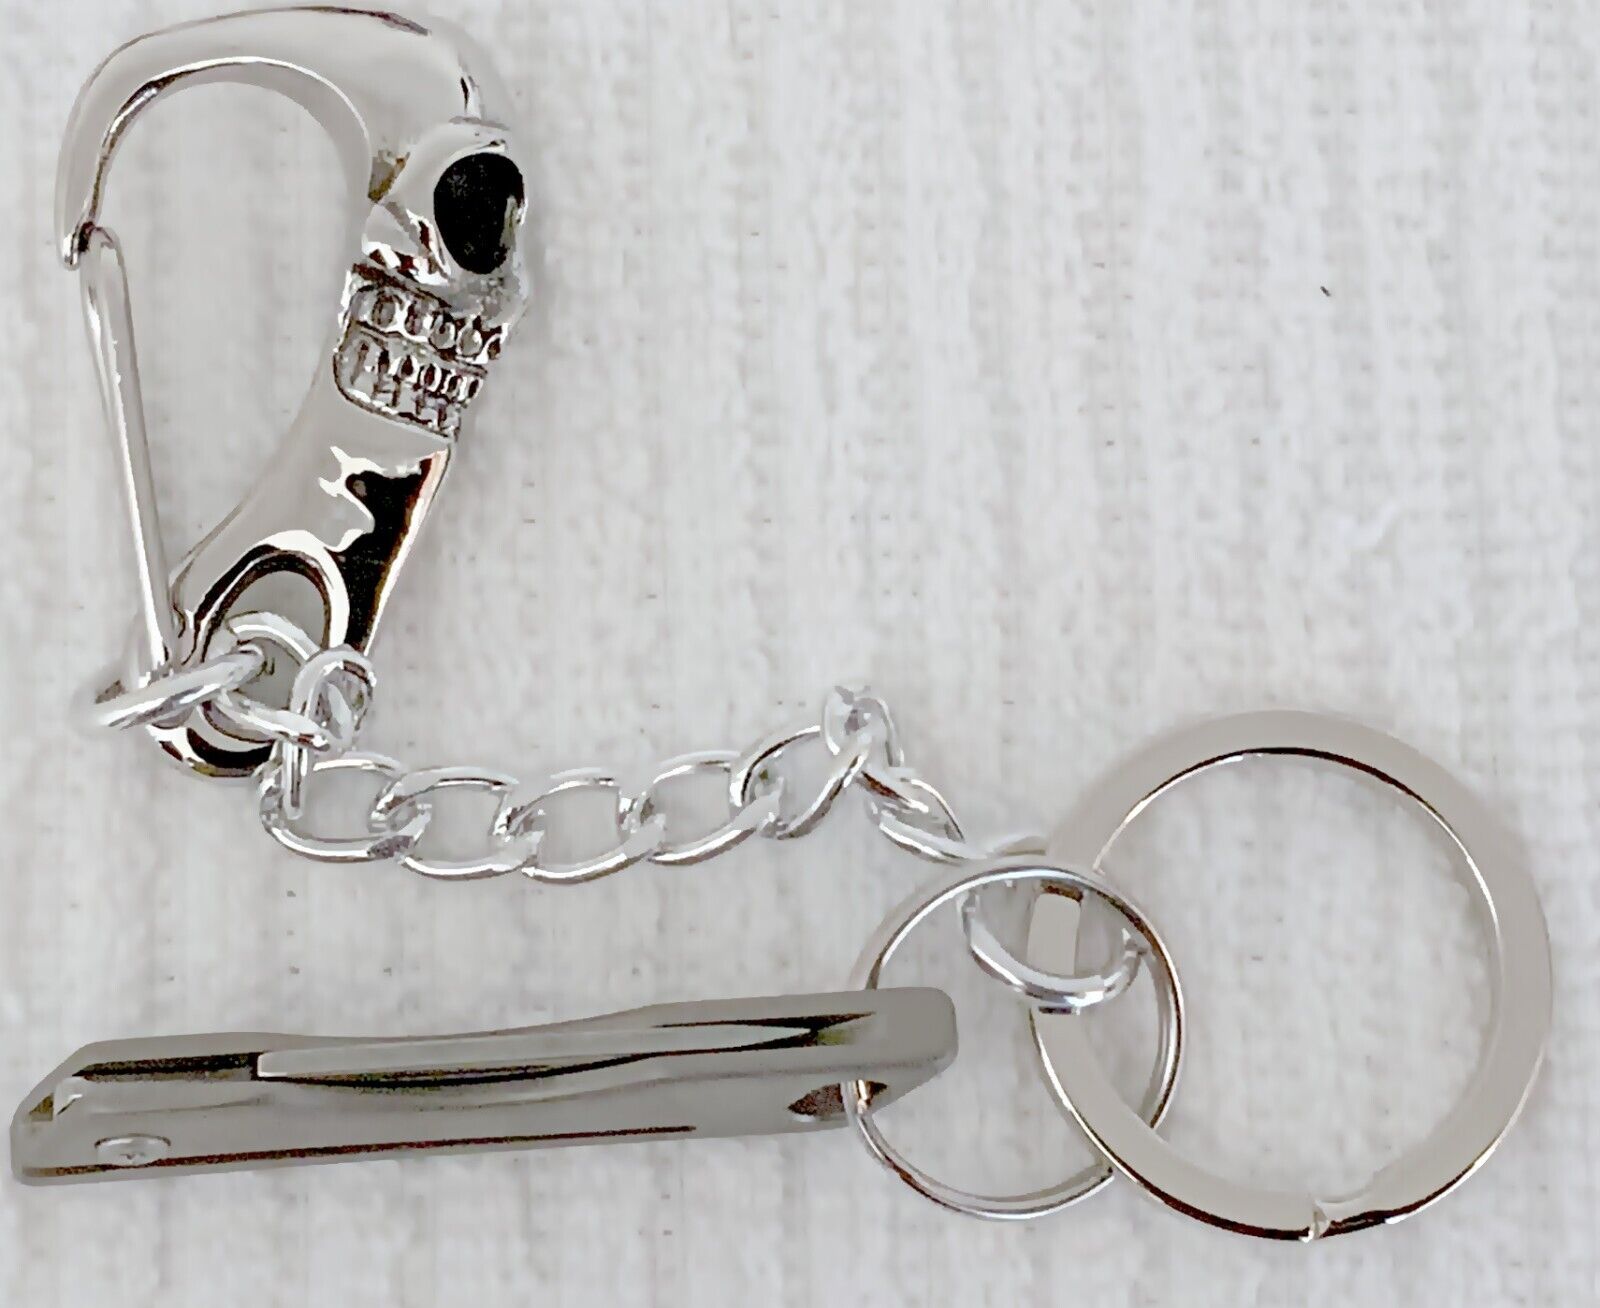 Blacks: Hand Crafted Titanium Skull Mini Knife Keychain